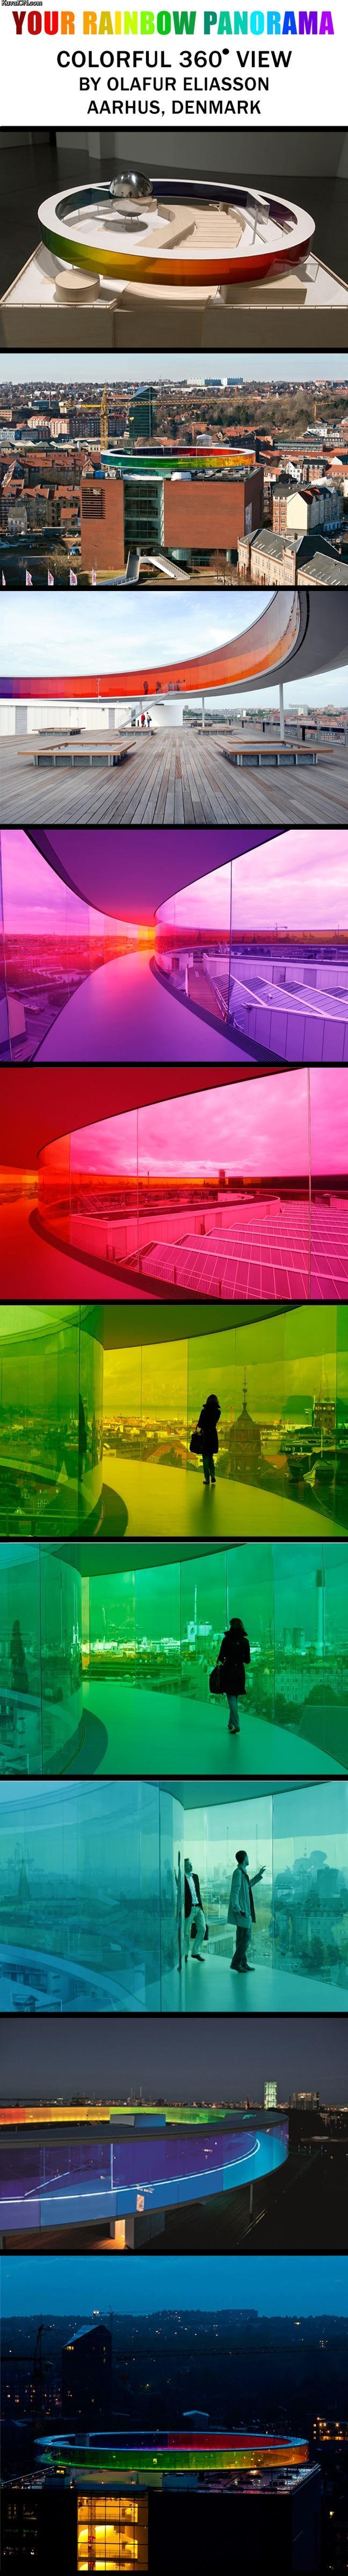 rainbow_panorama.jpg